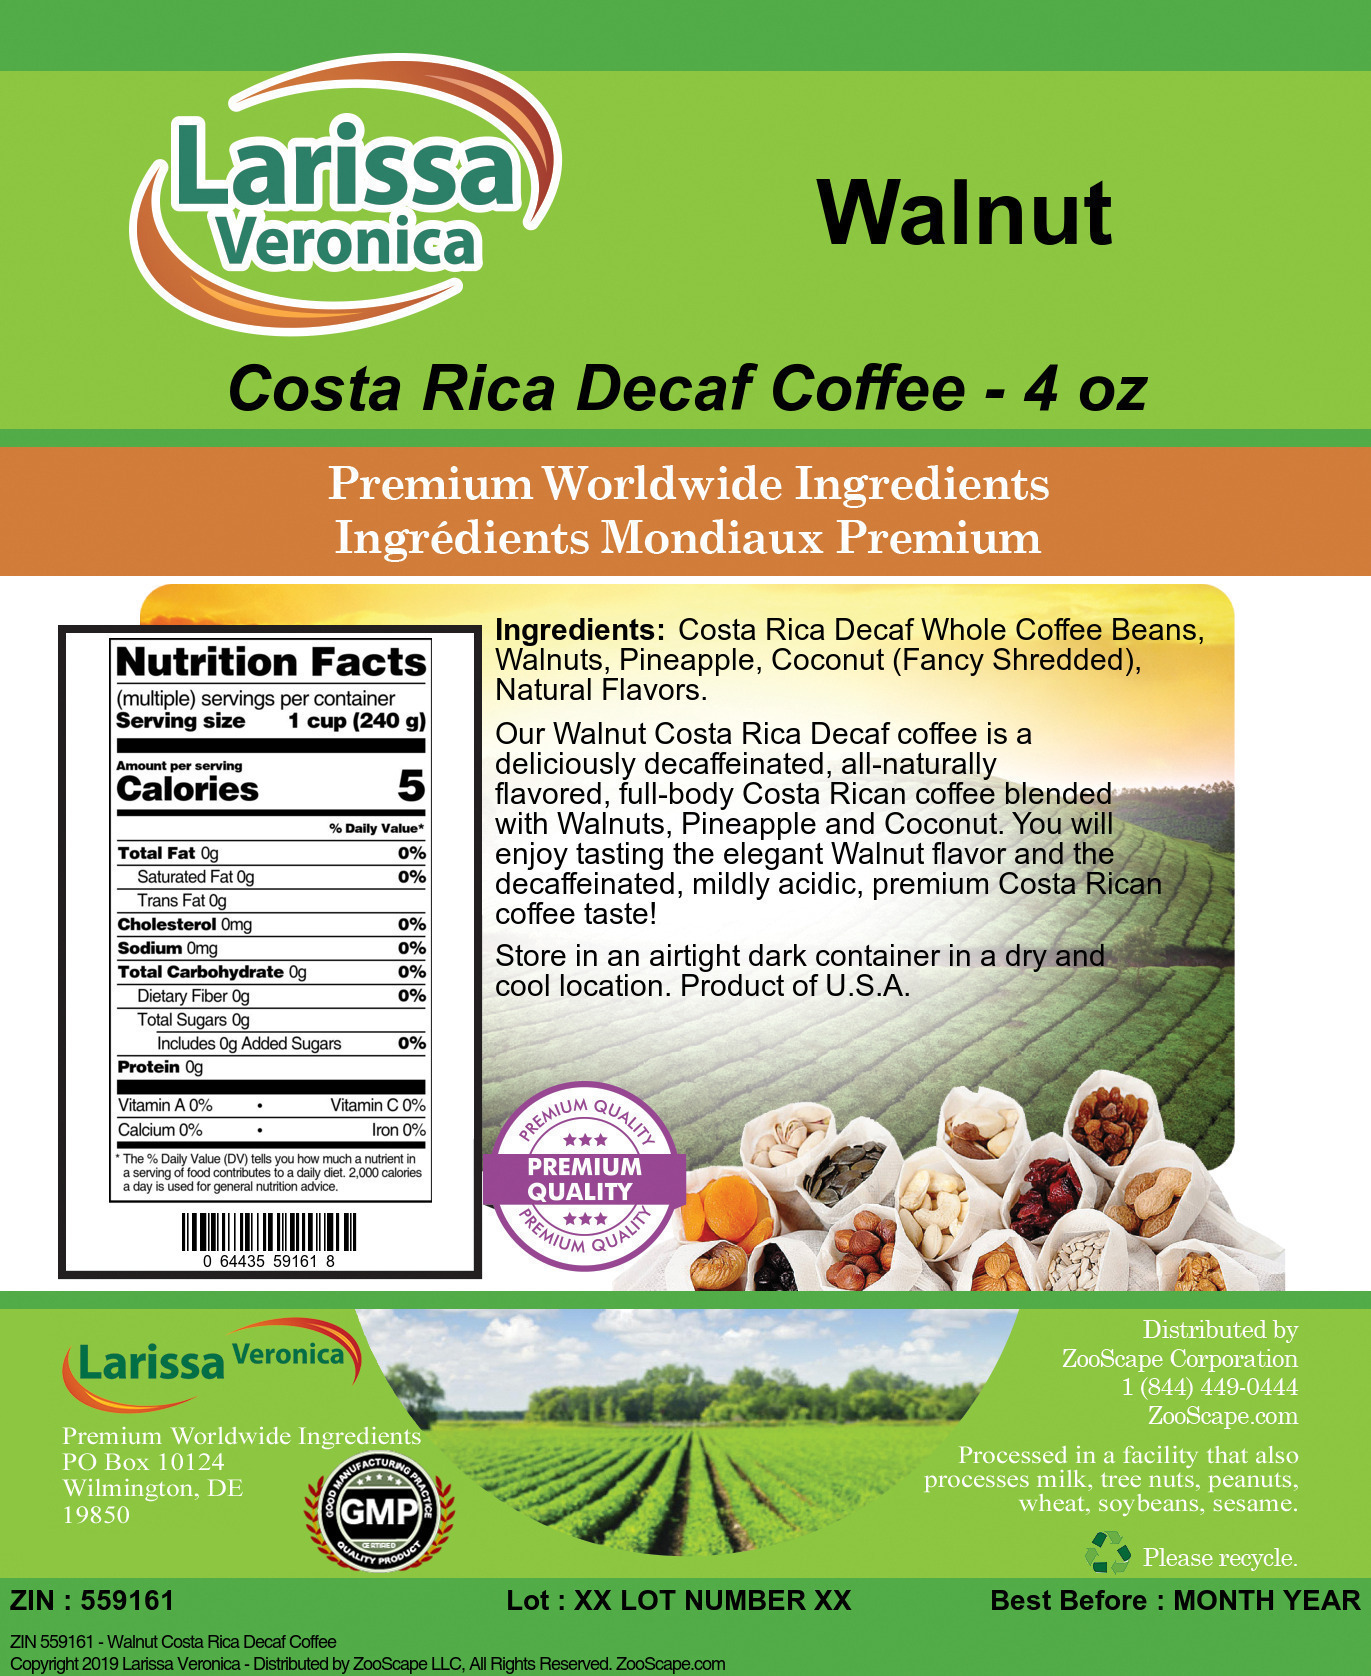 Walnut Costa Rica Decaf Coffee - Label